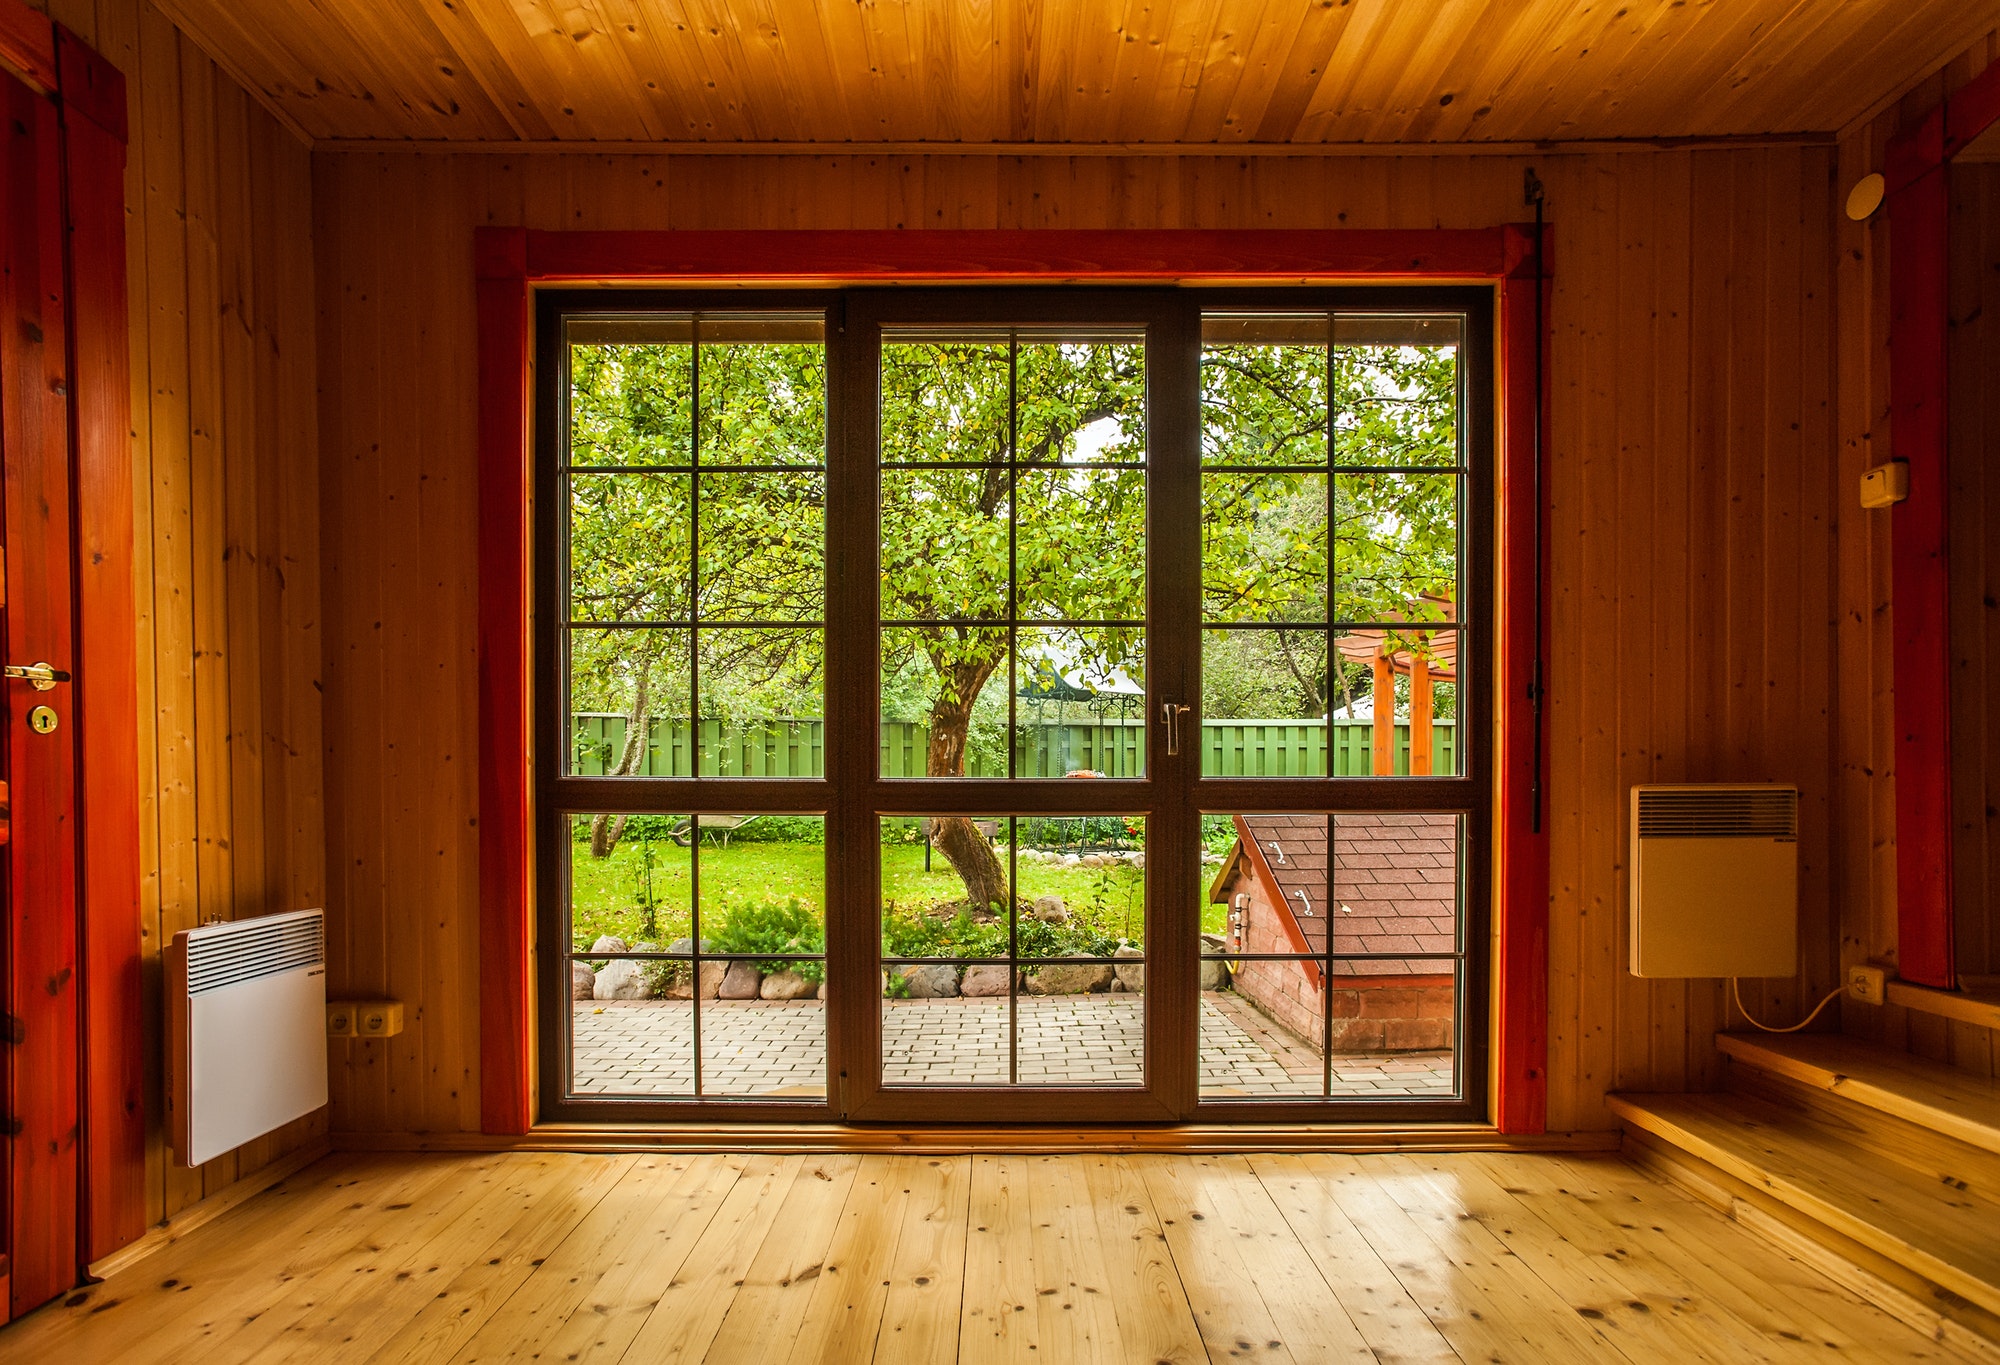 Big window showcase wooden interior